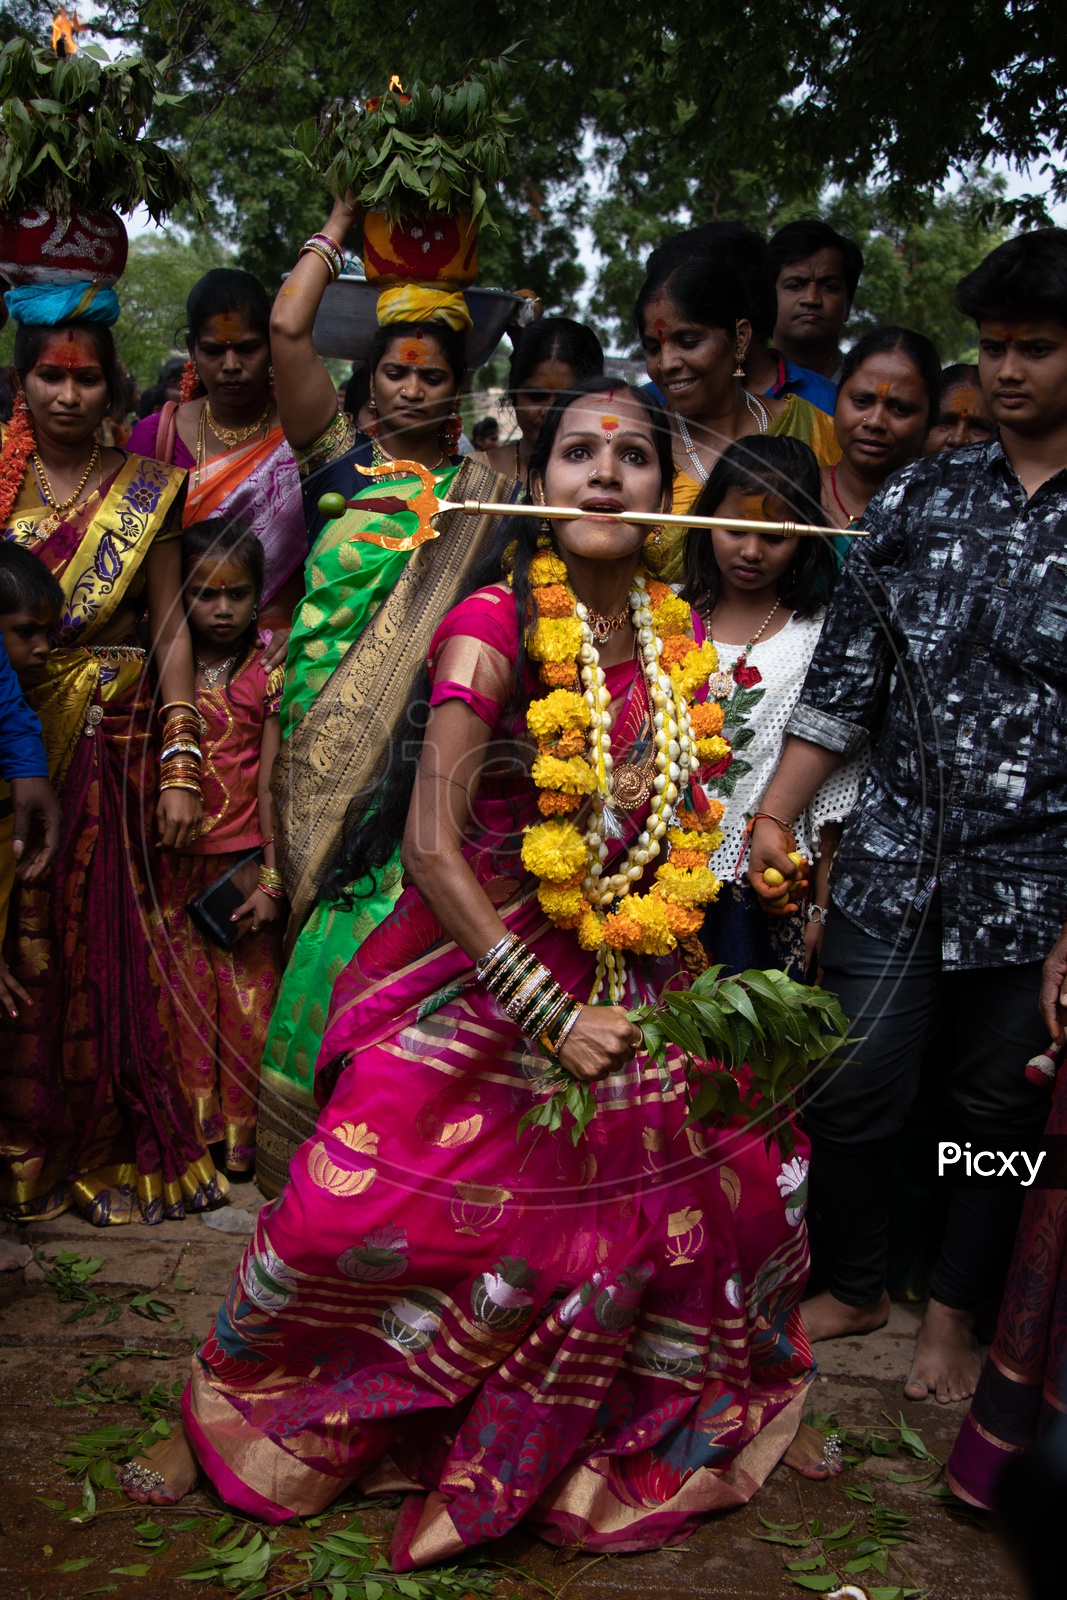 Tranced Woman Dancing During Bonalu Festival Celebrations In Golconda Fort